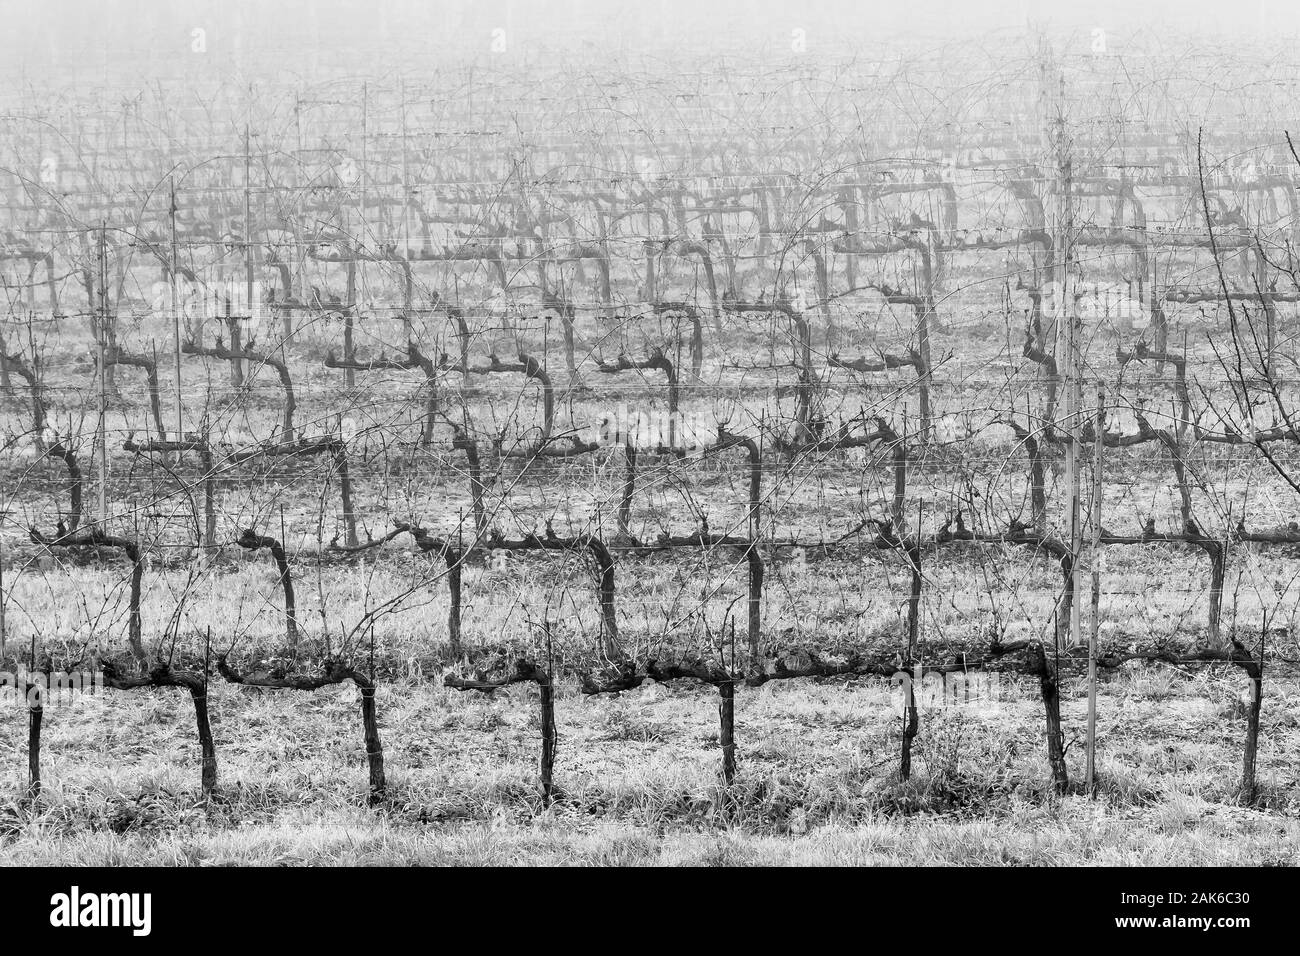 Belle vue en noir et blanc d'un vignoble du Chianti dans la saison d'hiver avec le gel et le brouillard Banque D'Images